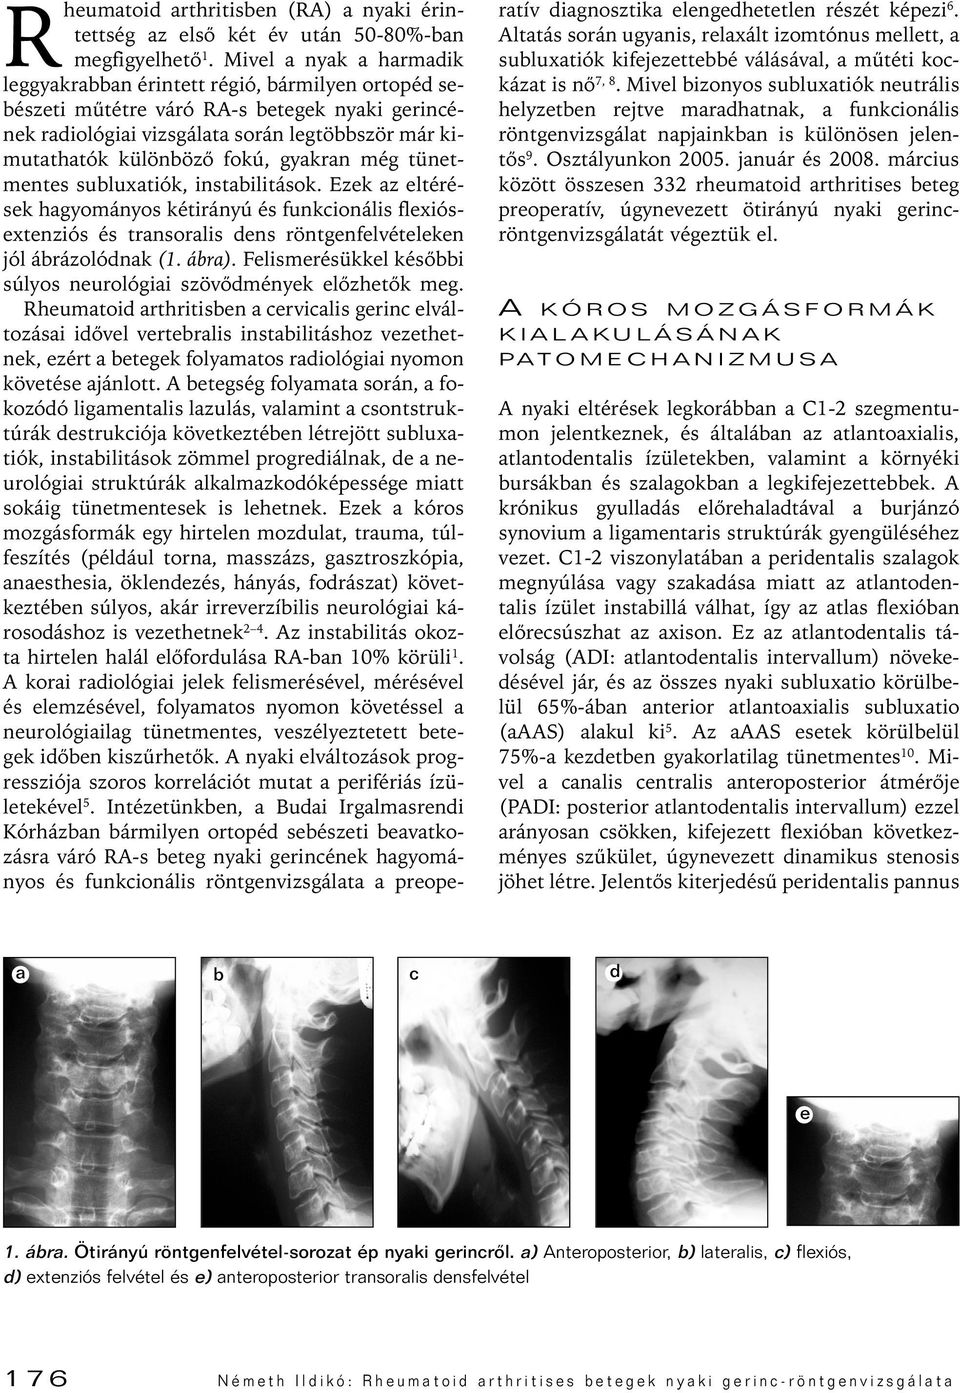 a nyaki gerinc rheumatoid arthritise)